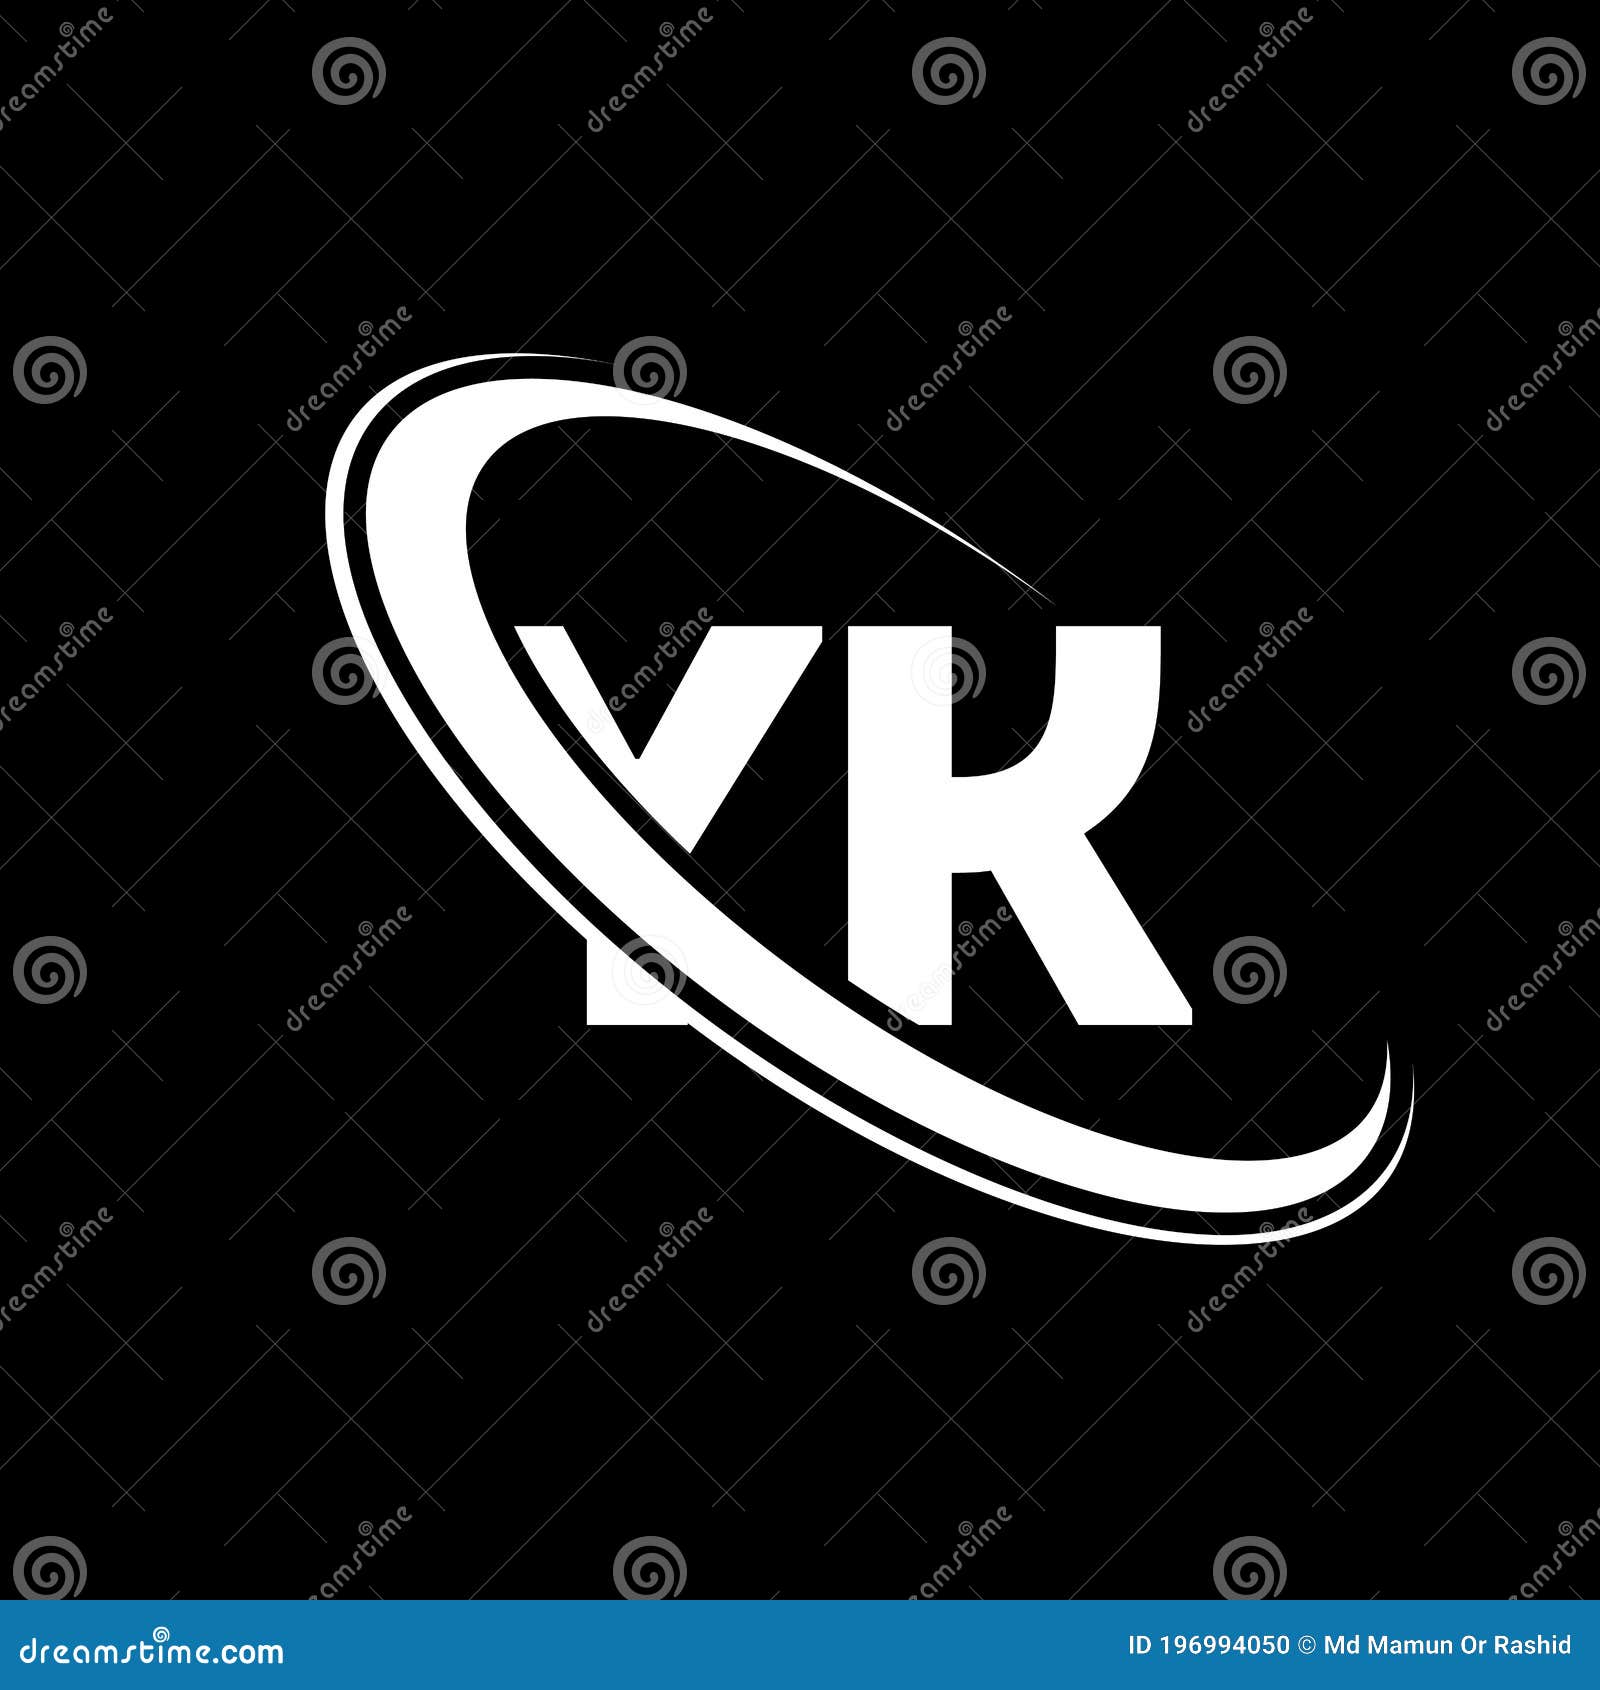 Yk Logo Y K Design White Yk Letter Yk Y K Letter Logo Design Stock Vector Illustration Of